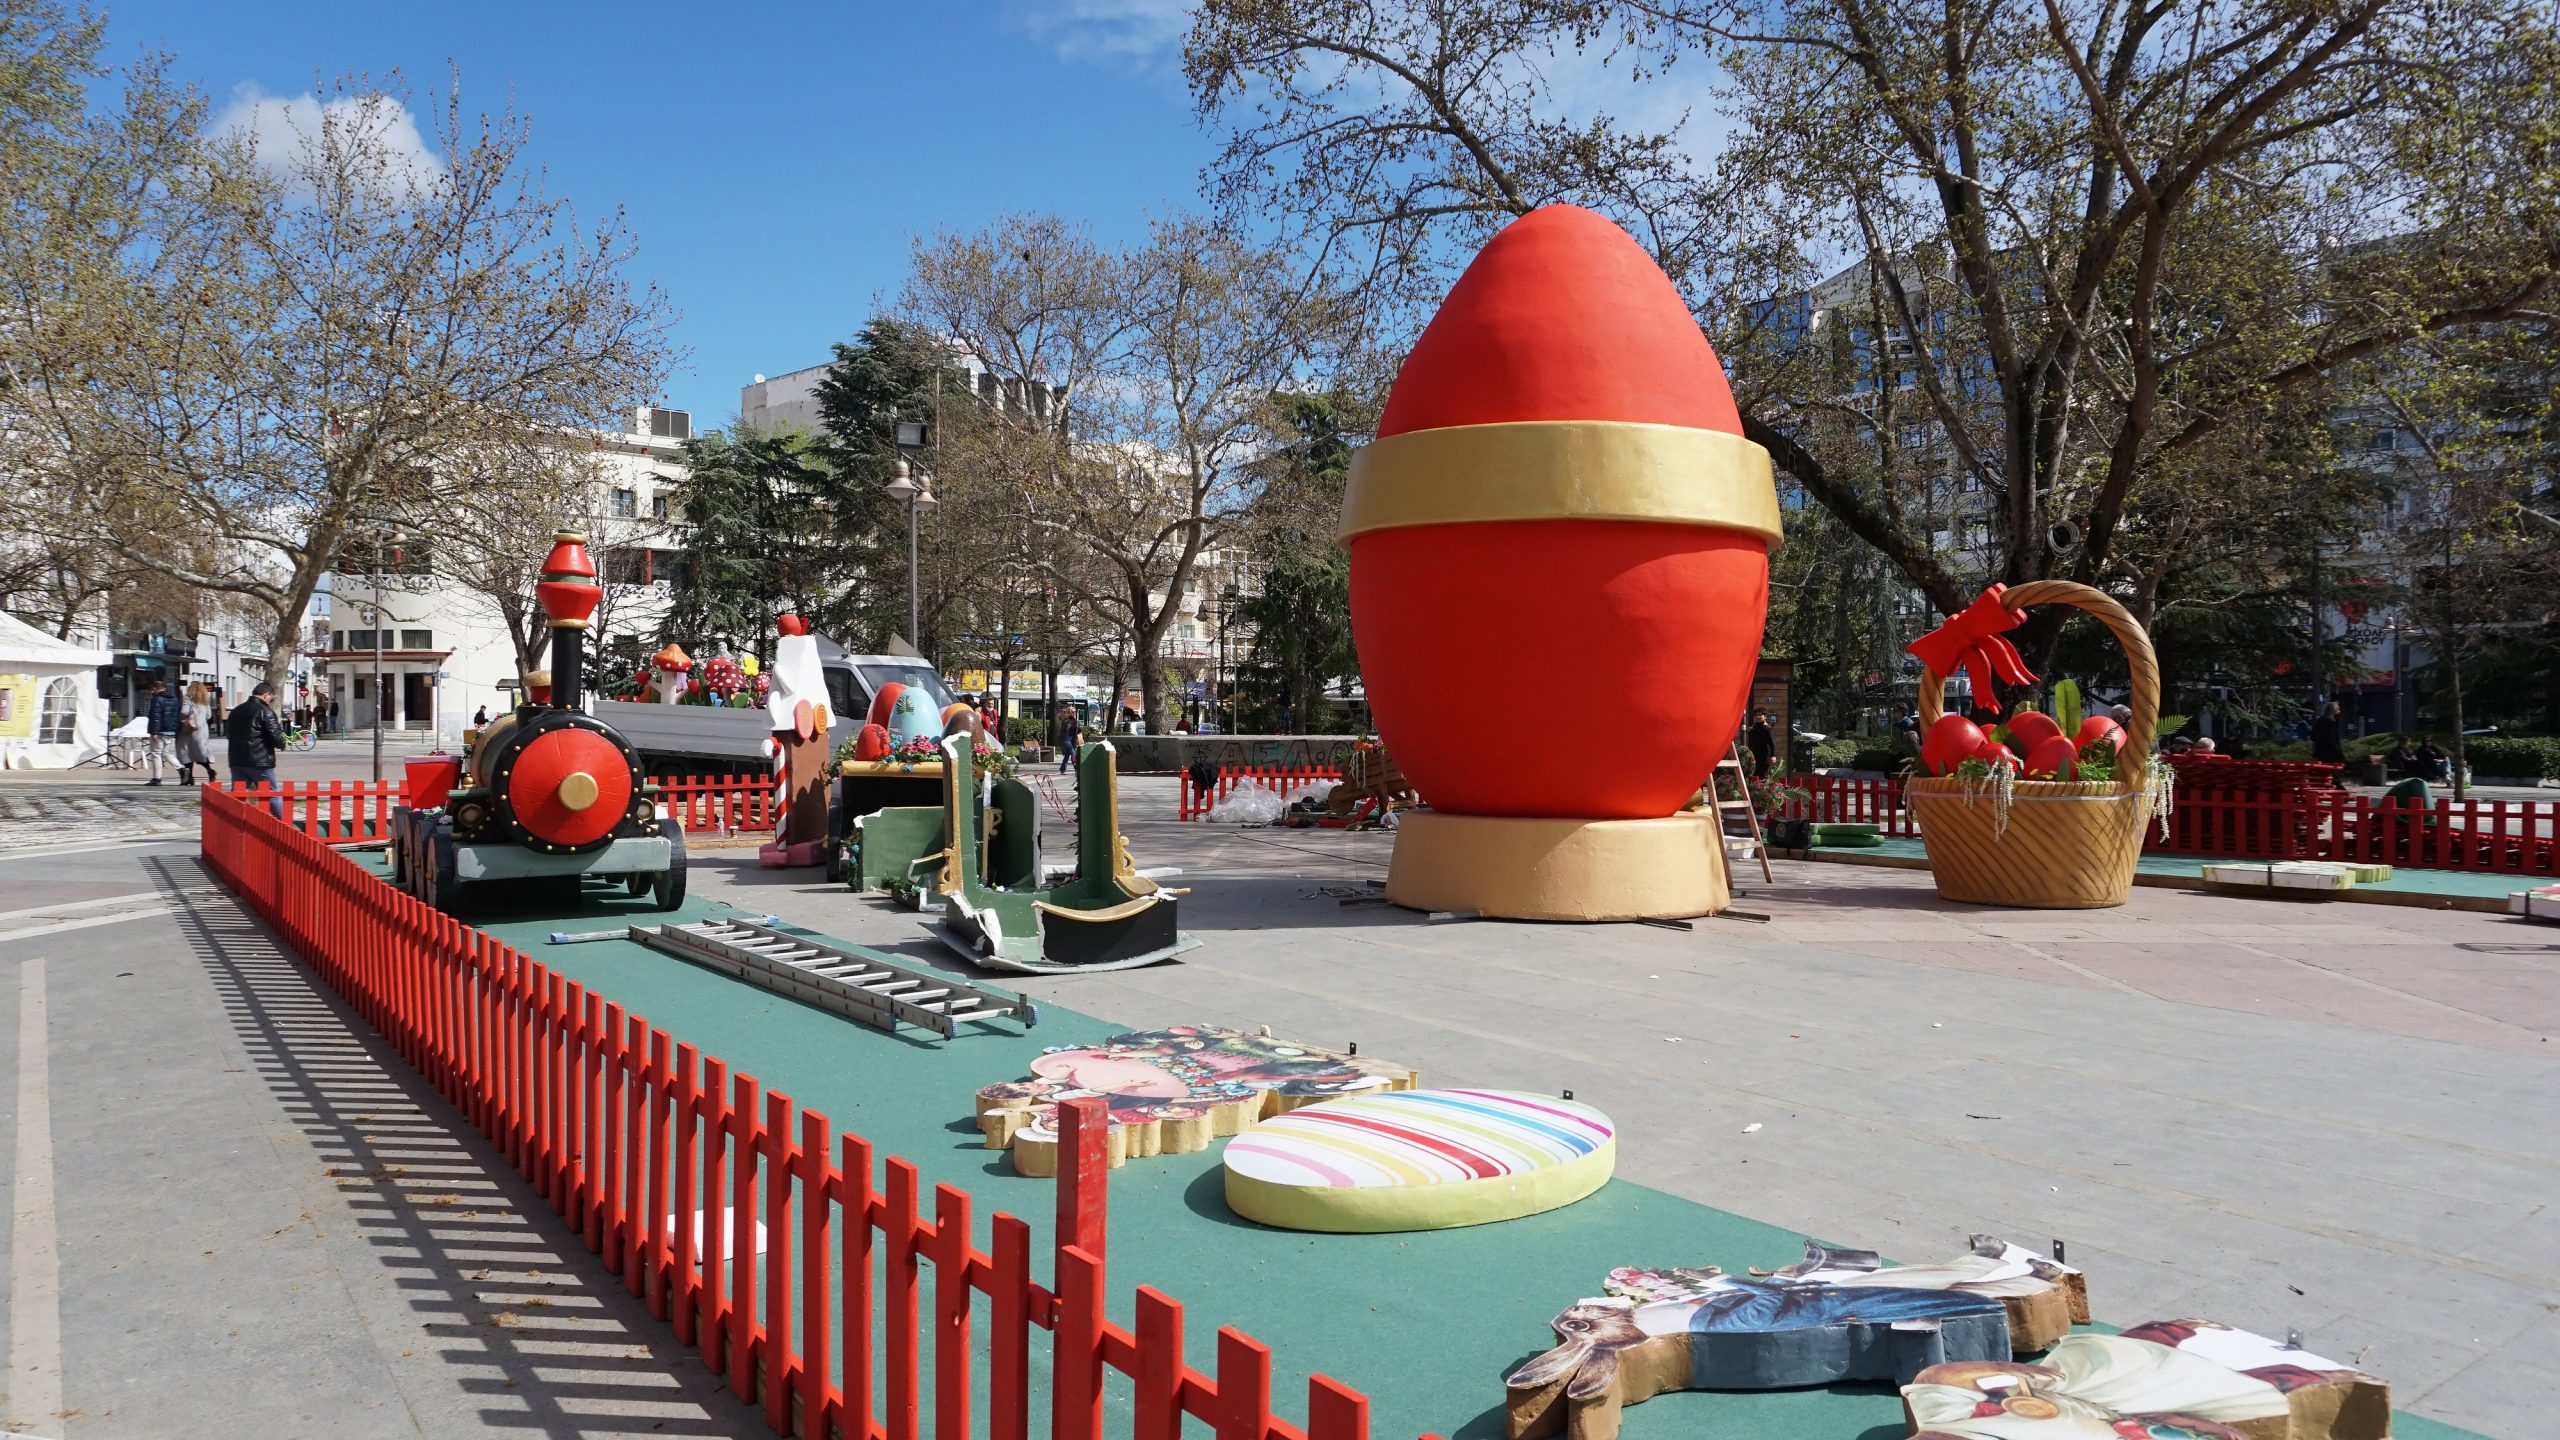 Πασχαλινό χωριό - έκπληξη απο το Δήμο Λαρισαίων για τα μικρά παιδιά στην Κεντρική Πλατεία